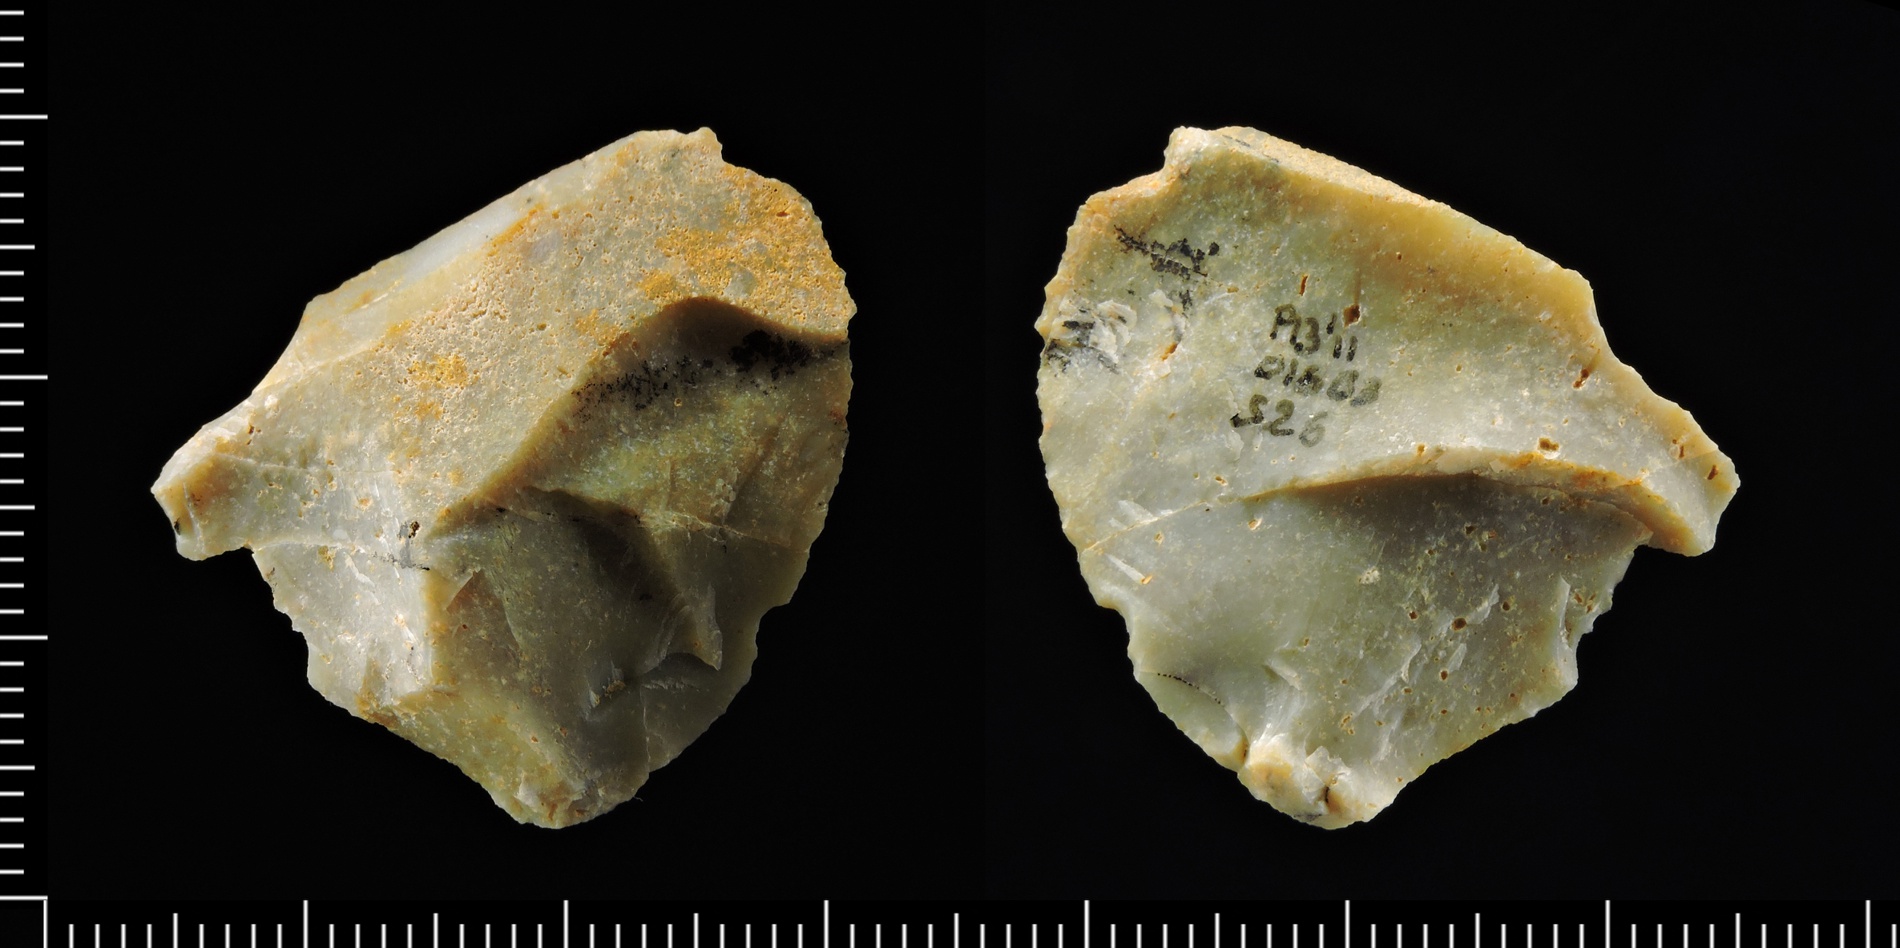 las dataciones rebajan a 800.000 años la antigüedad del yacimiento italiano de pirro nord